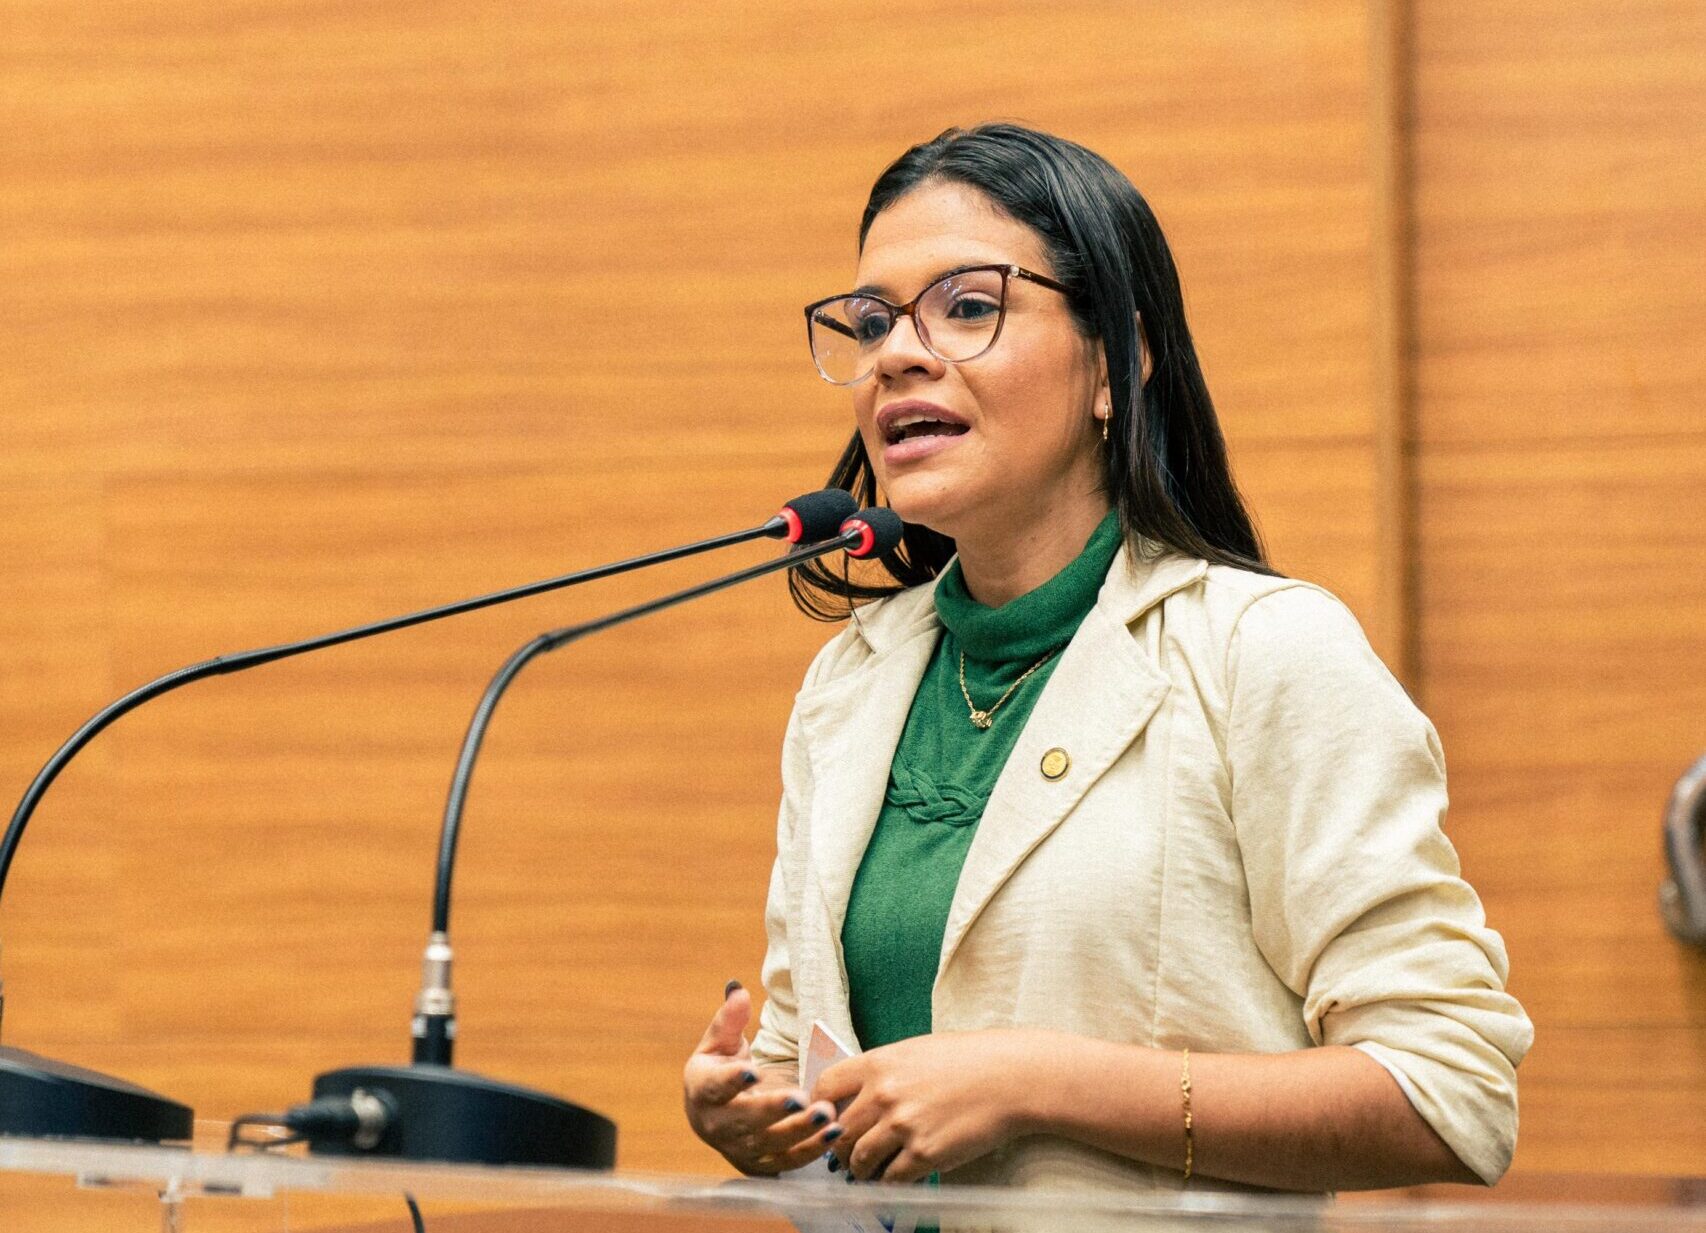 Superintendente da Juventude de Sergipe deixa o governo e avalia futuro político